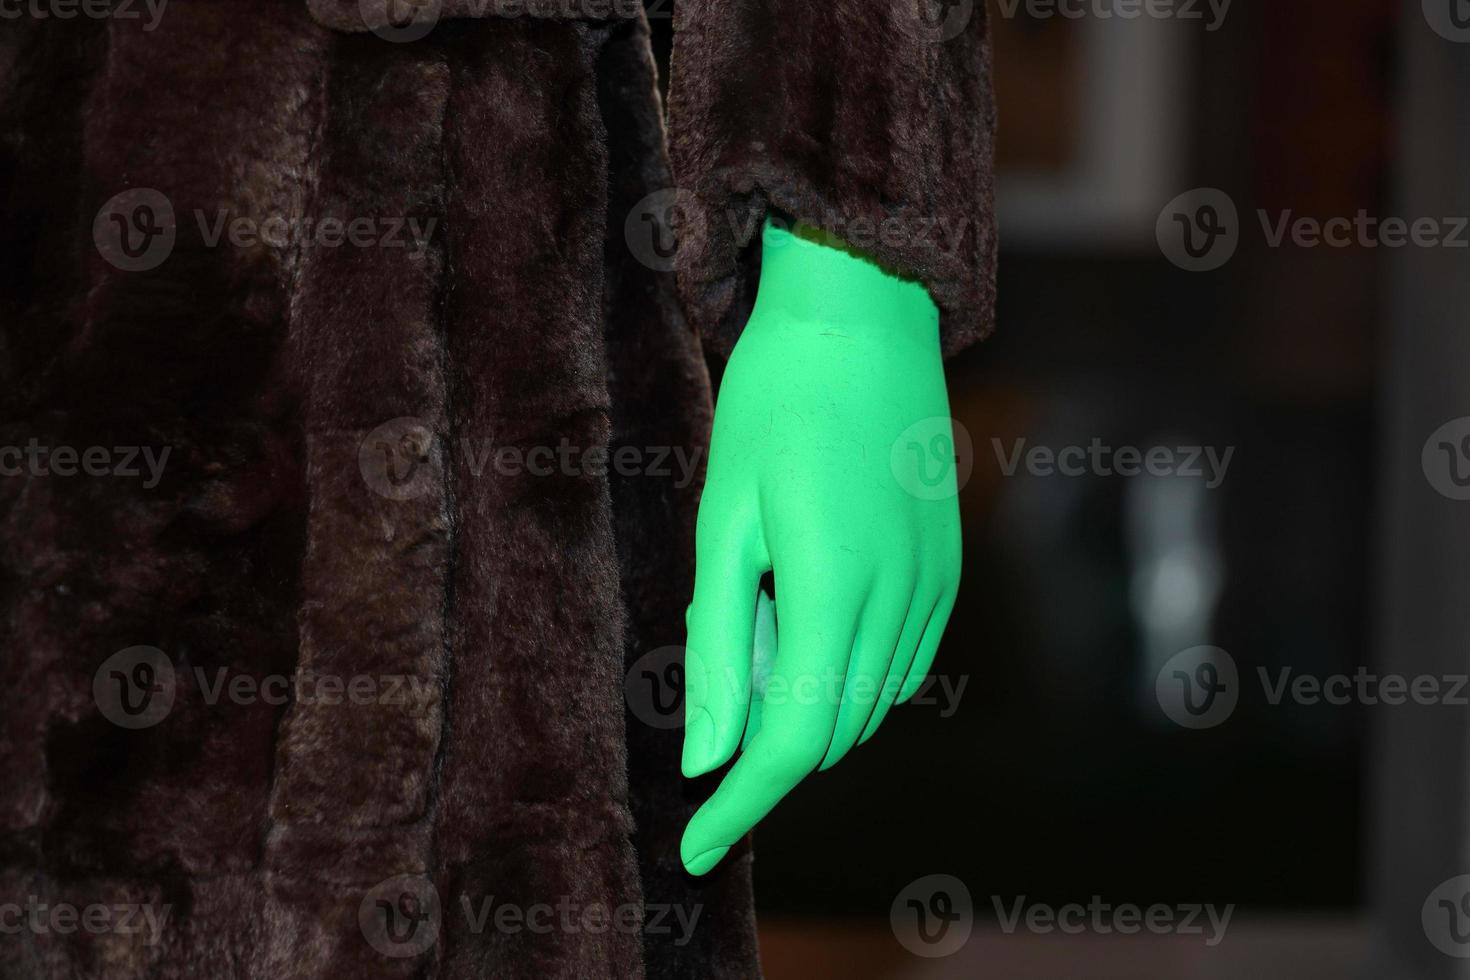 mão verde em detalhes de roupas de peles de animais foto